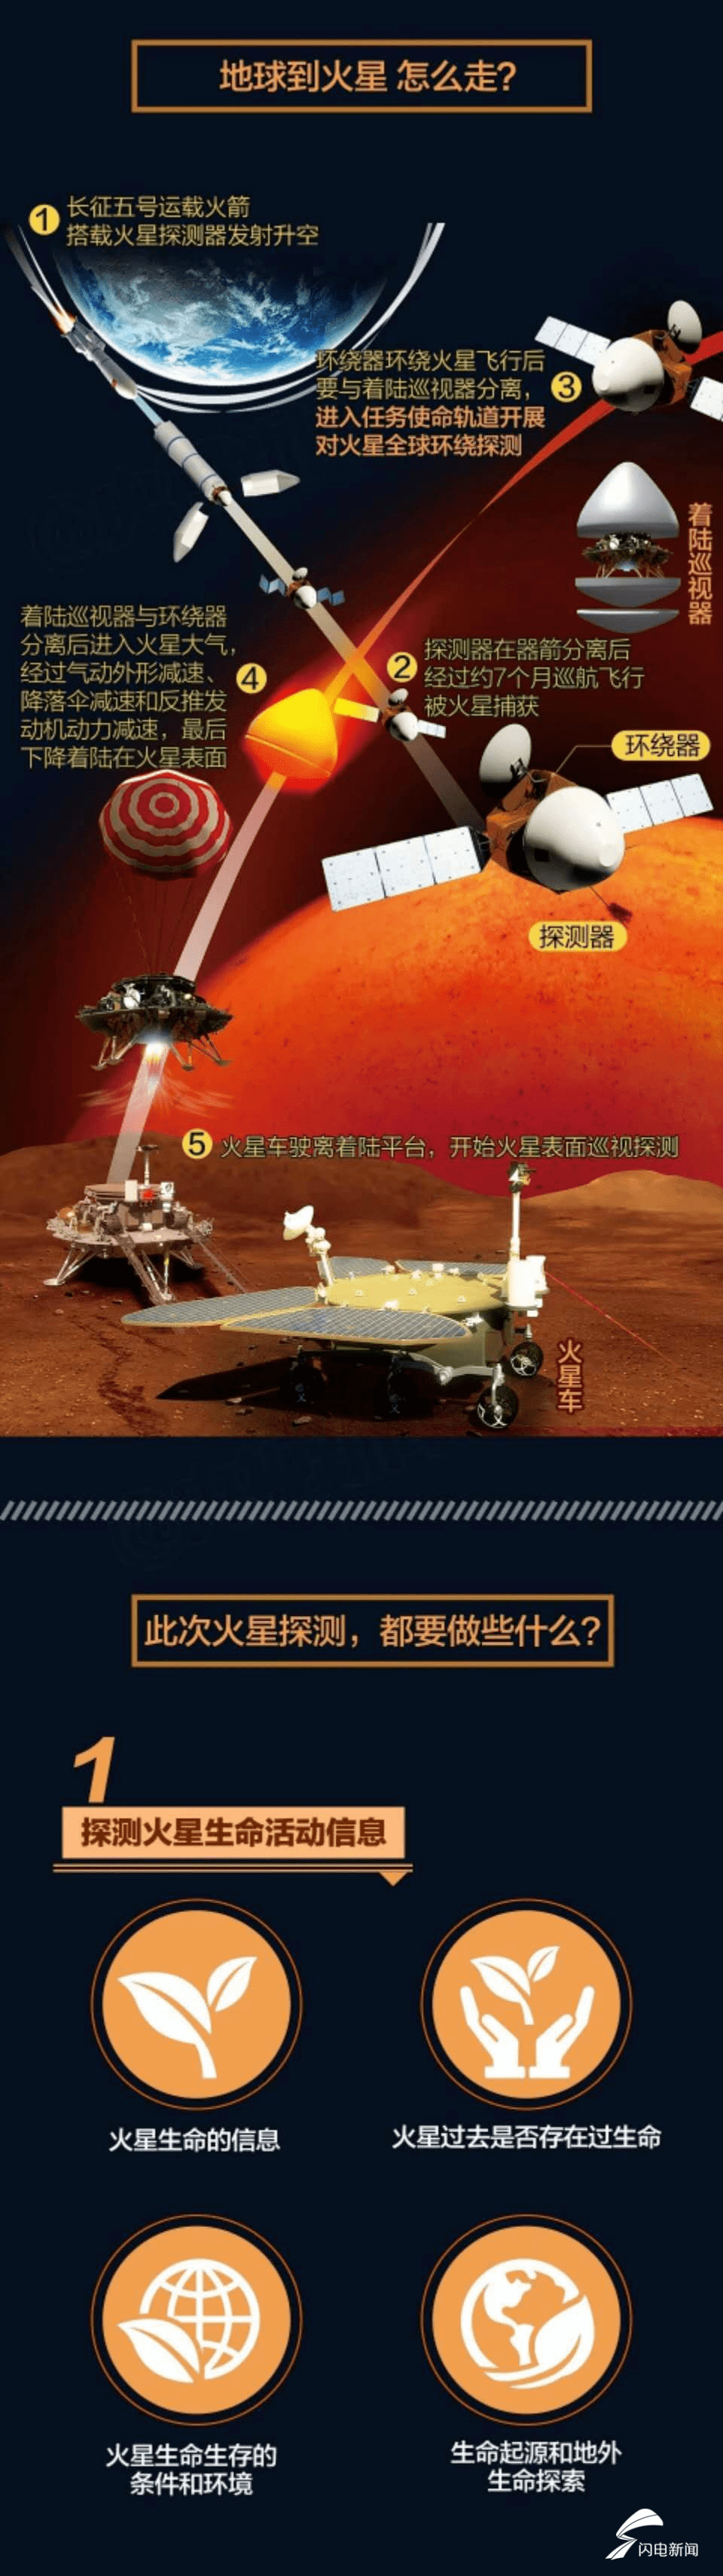 新闻7月25日讯7月23日12时41分,我国首次火星探测任务"天问一号"探测